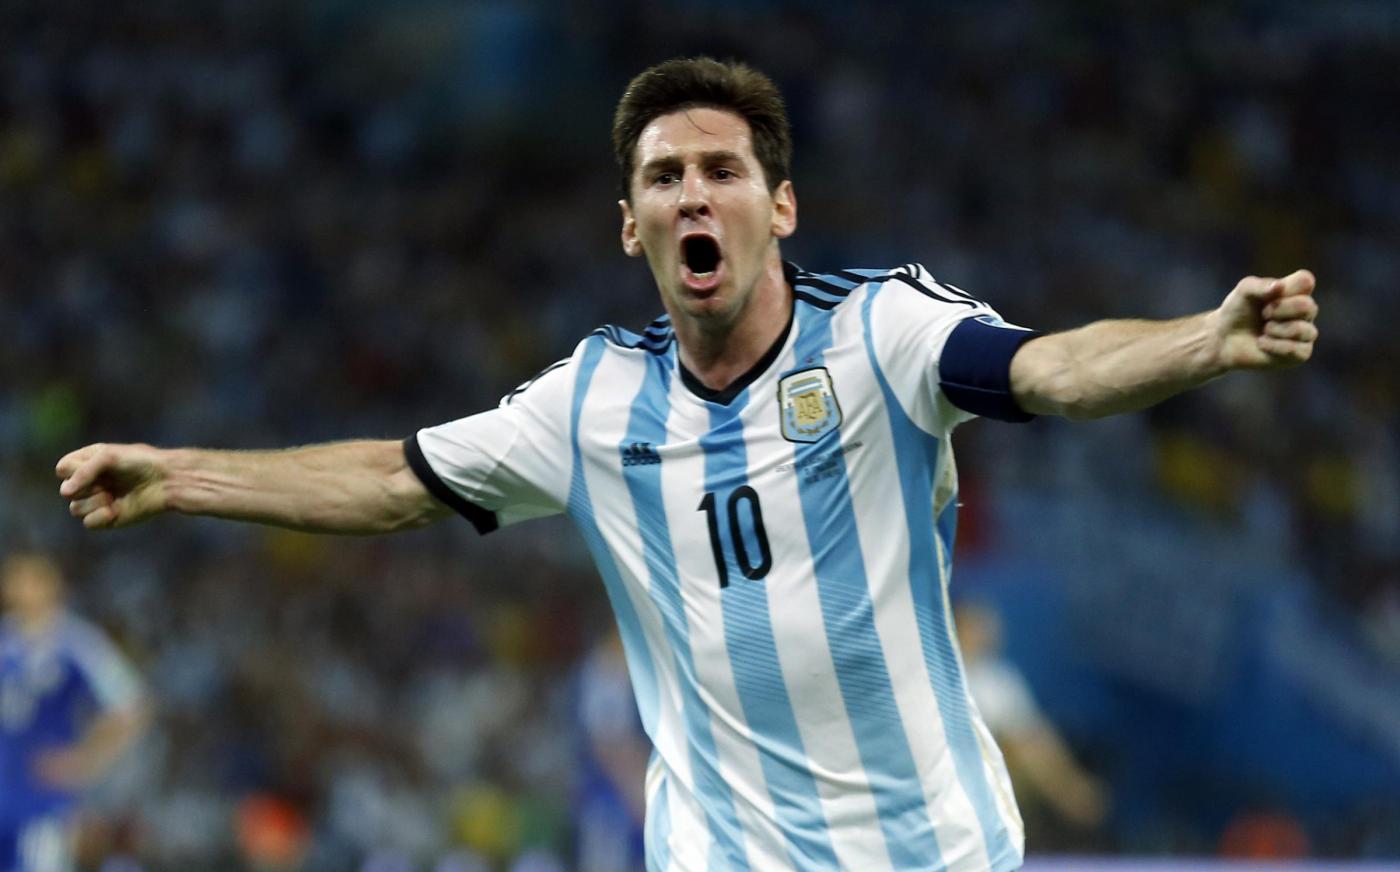 ARGENTINA-IRAN (RISULTATO 1-0): La diretta|Mondiali 2014